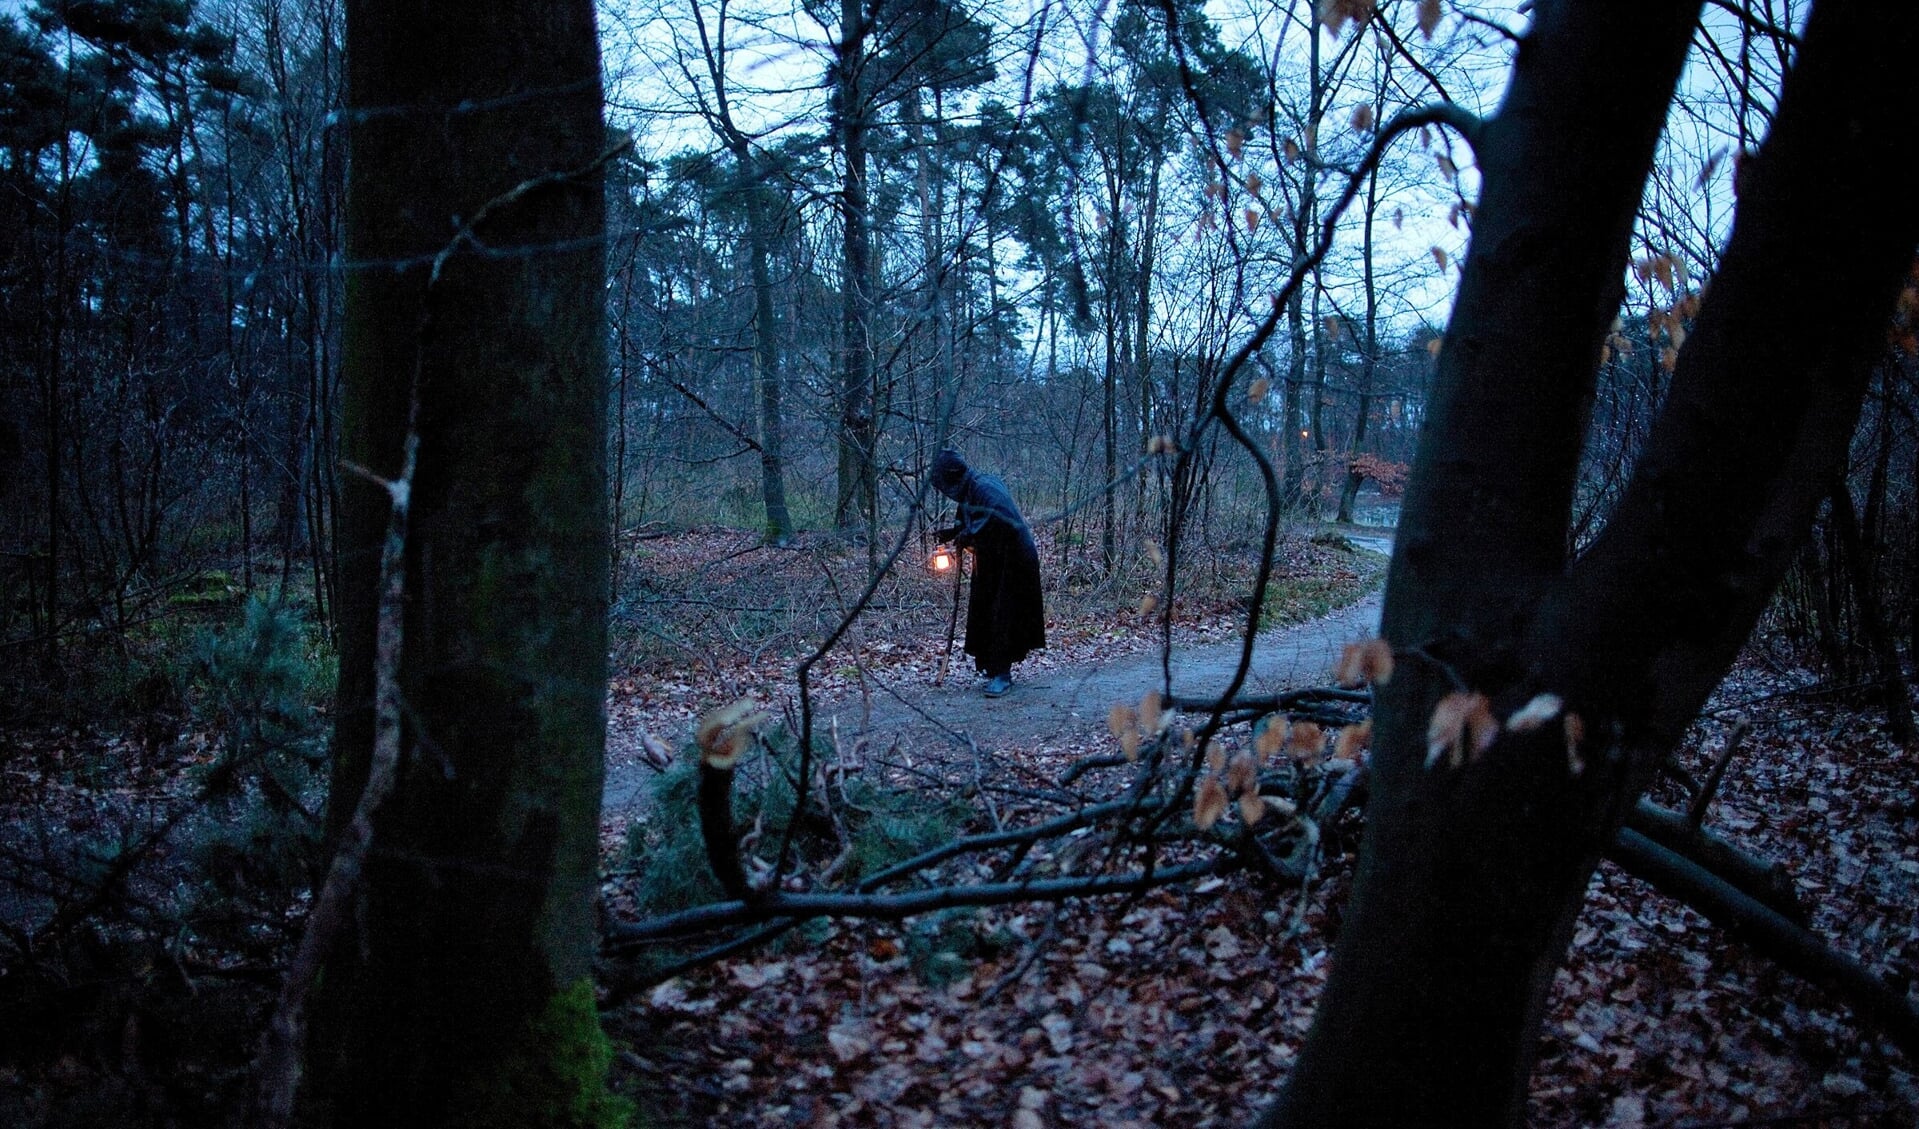 De Nachtwachter is na zonsondergang te vinden in de bossen.